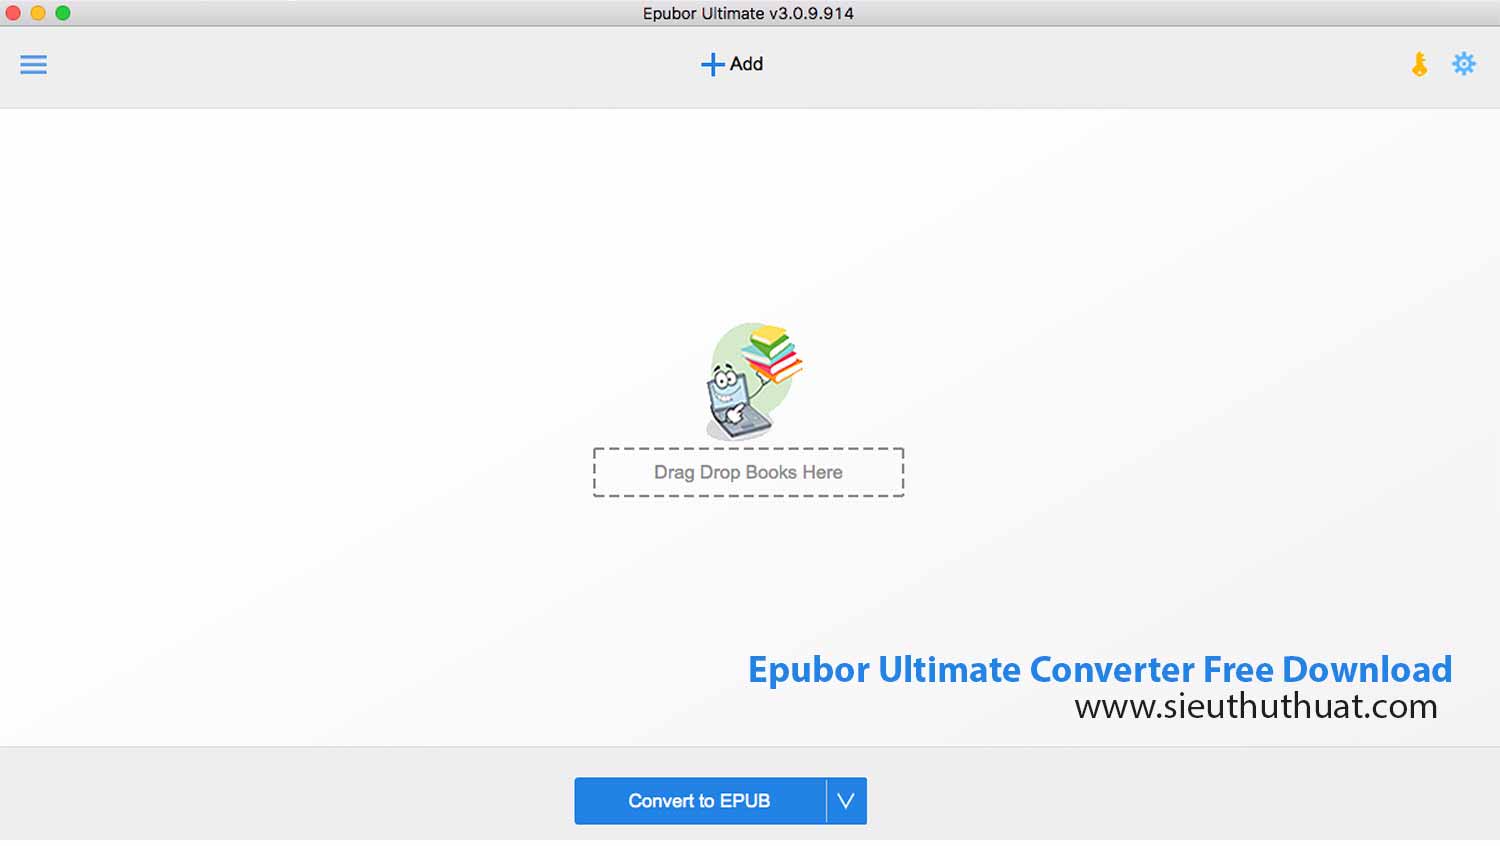 epubor ultimate converter v3.0.11.212